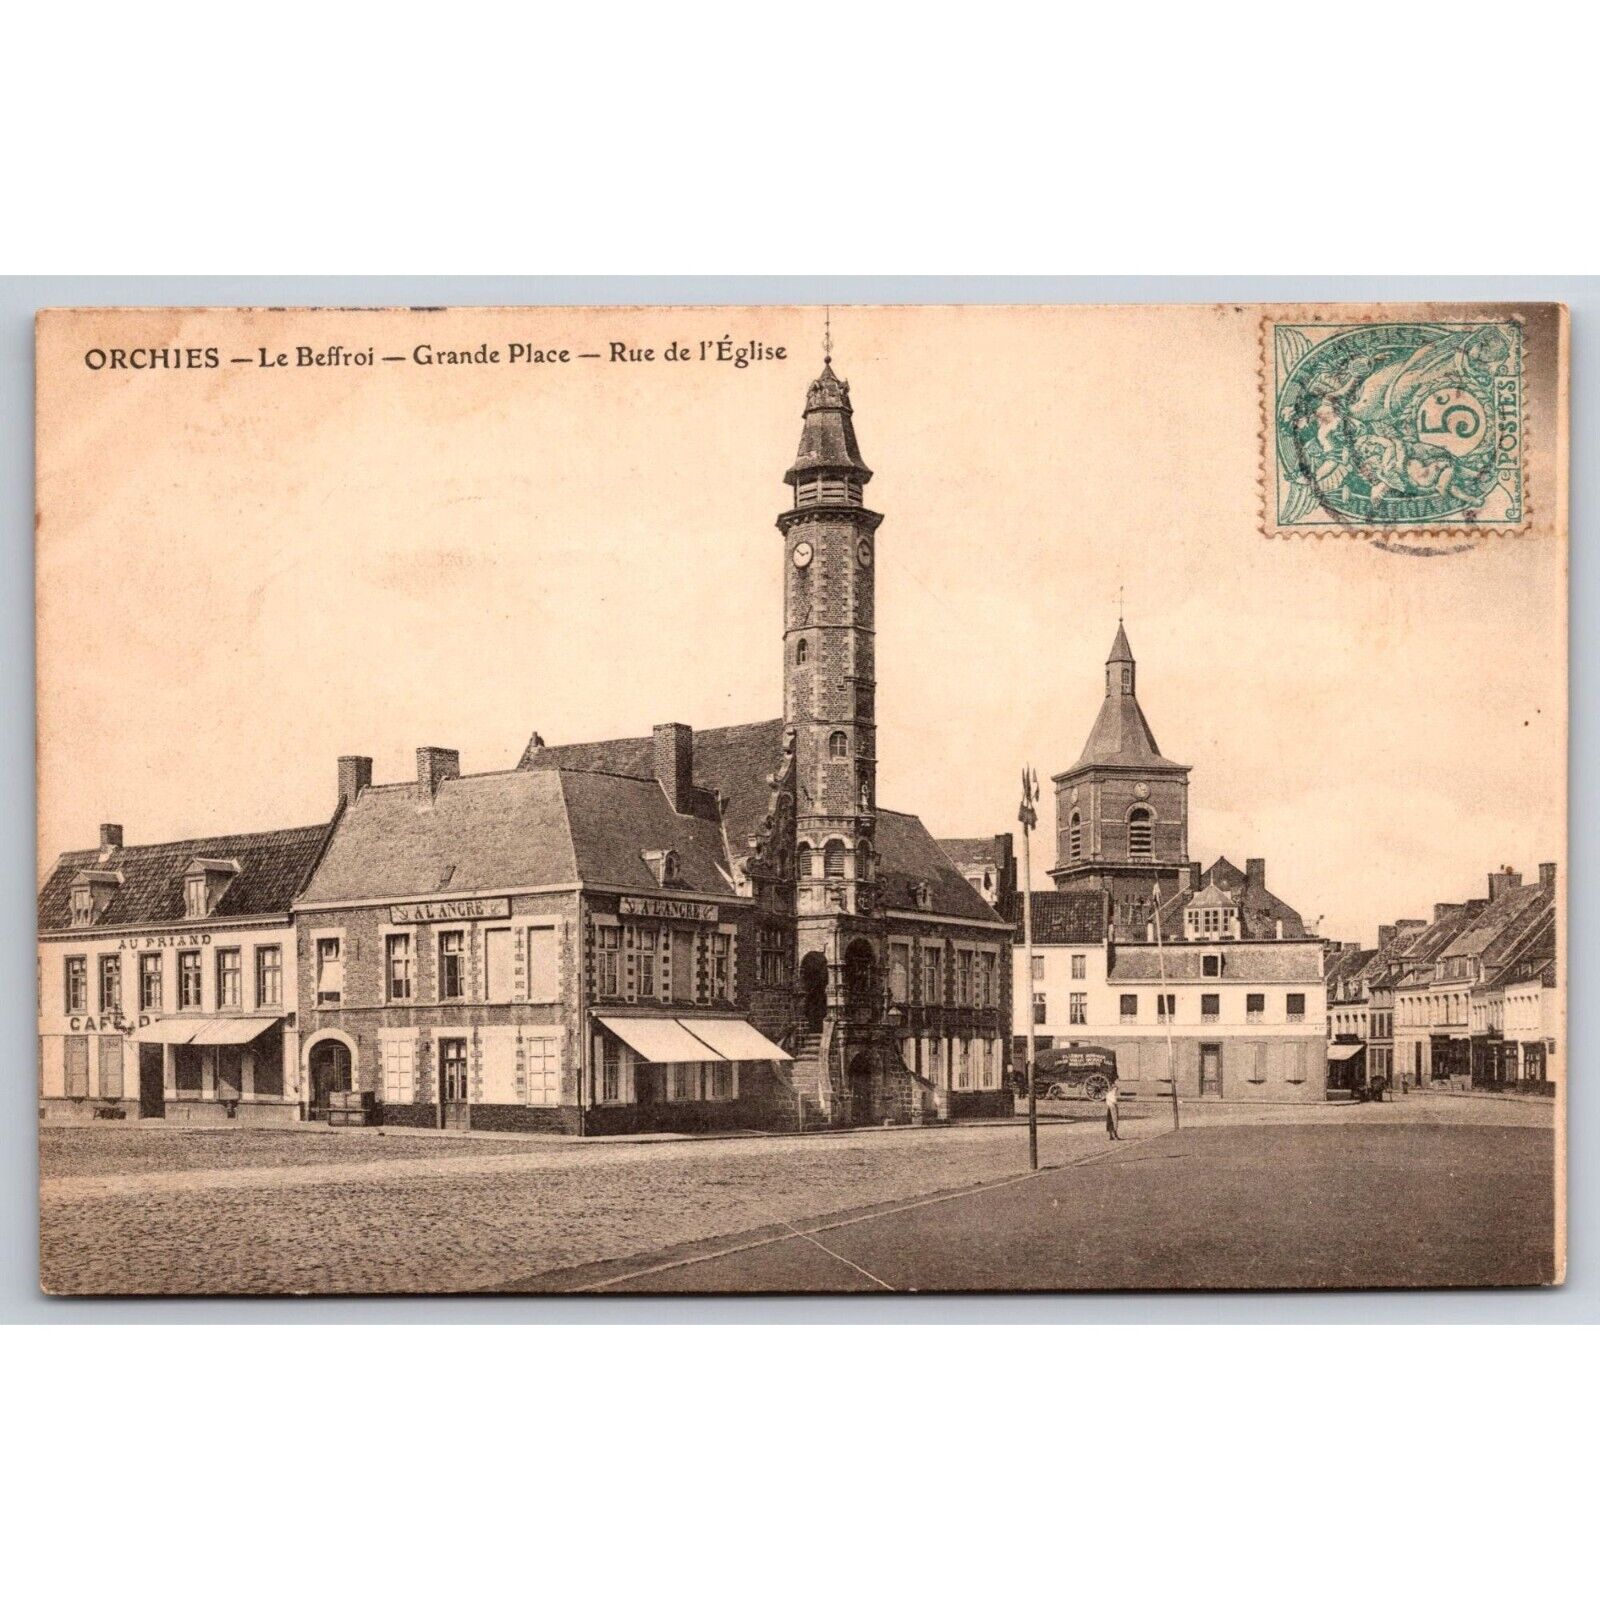 Postcard Antique Orchies Le Beffroi Grande Place Rue de l'Eglise c1900 0395